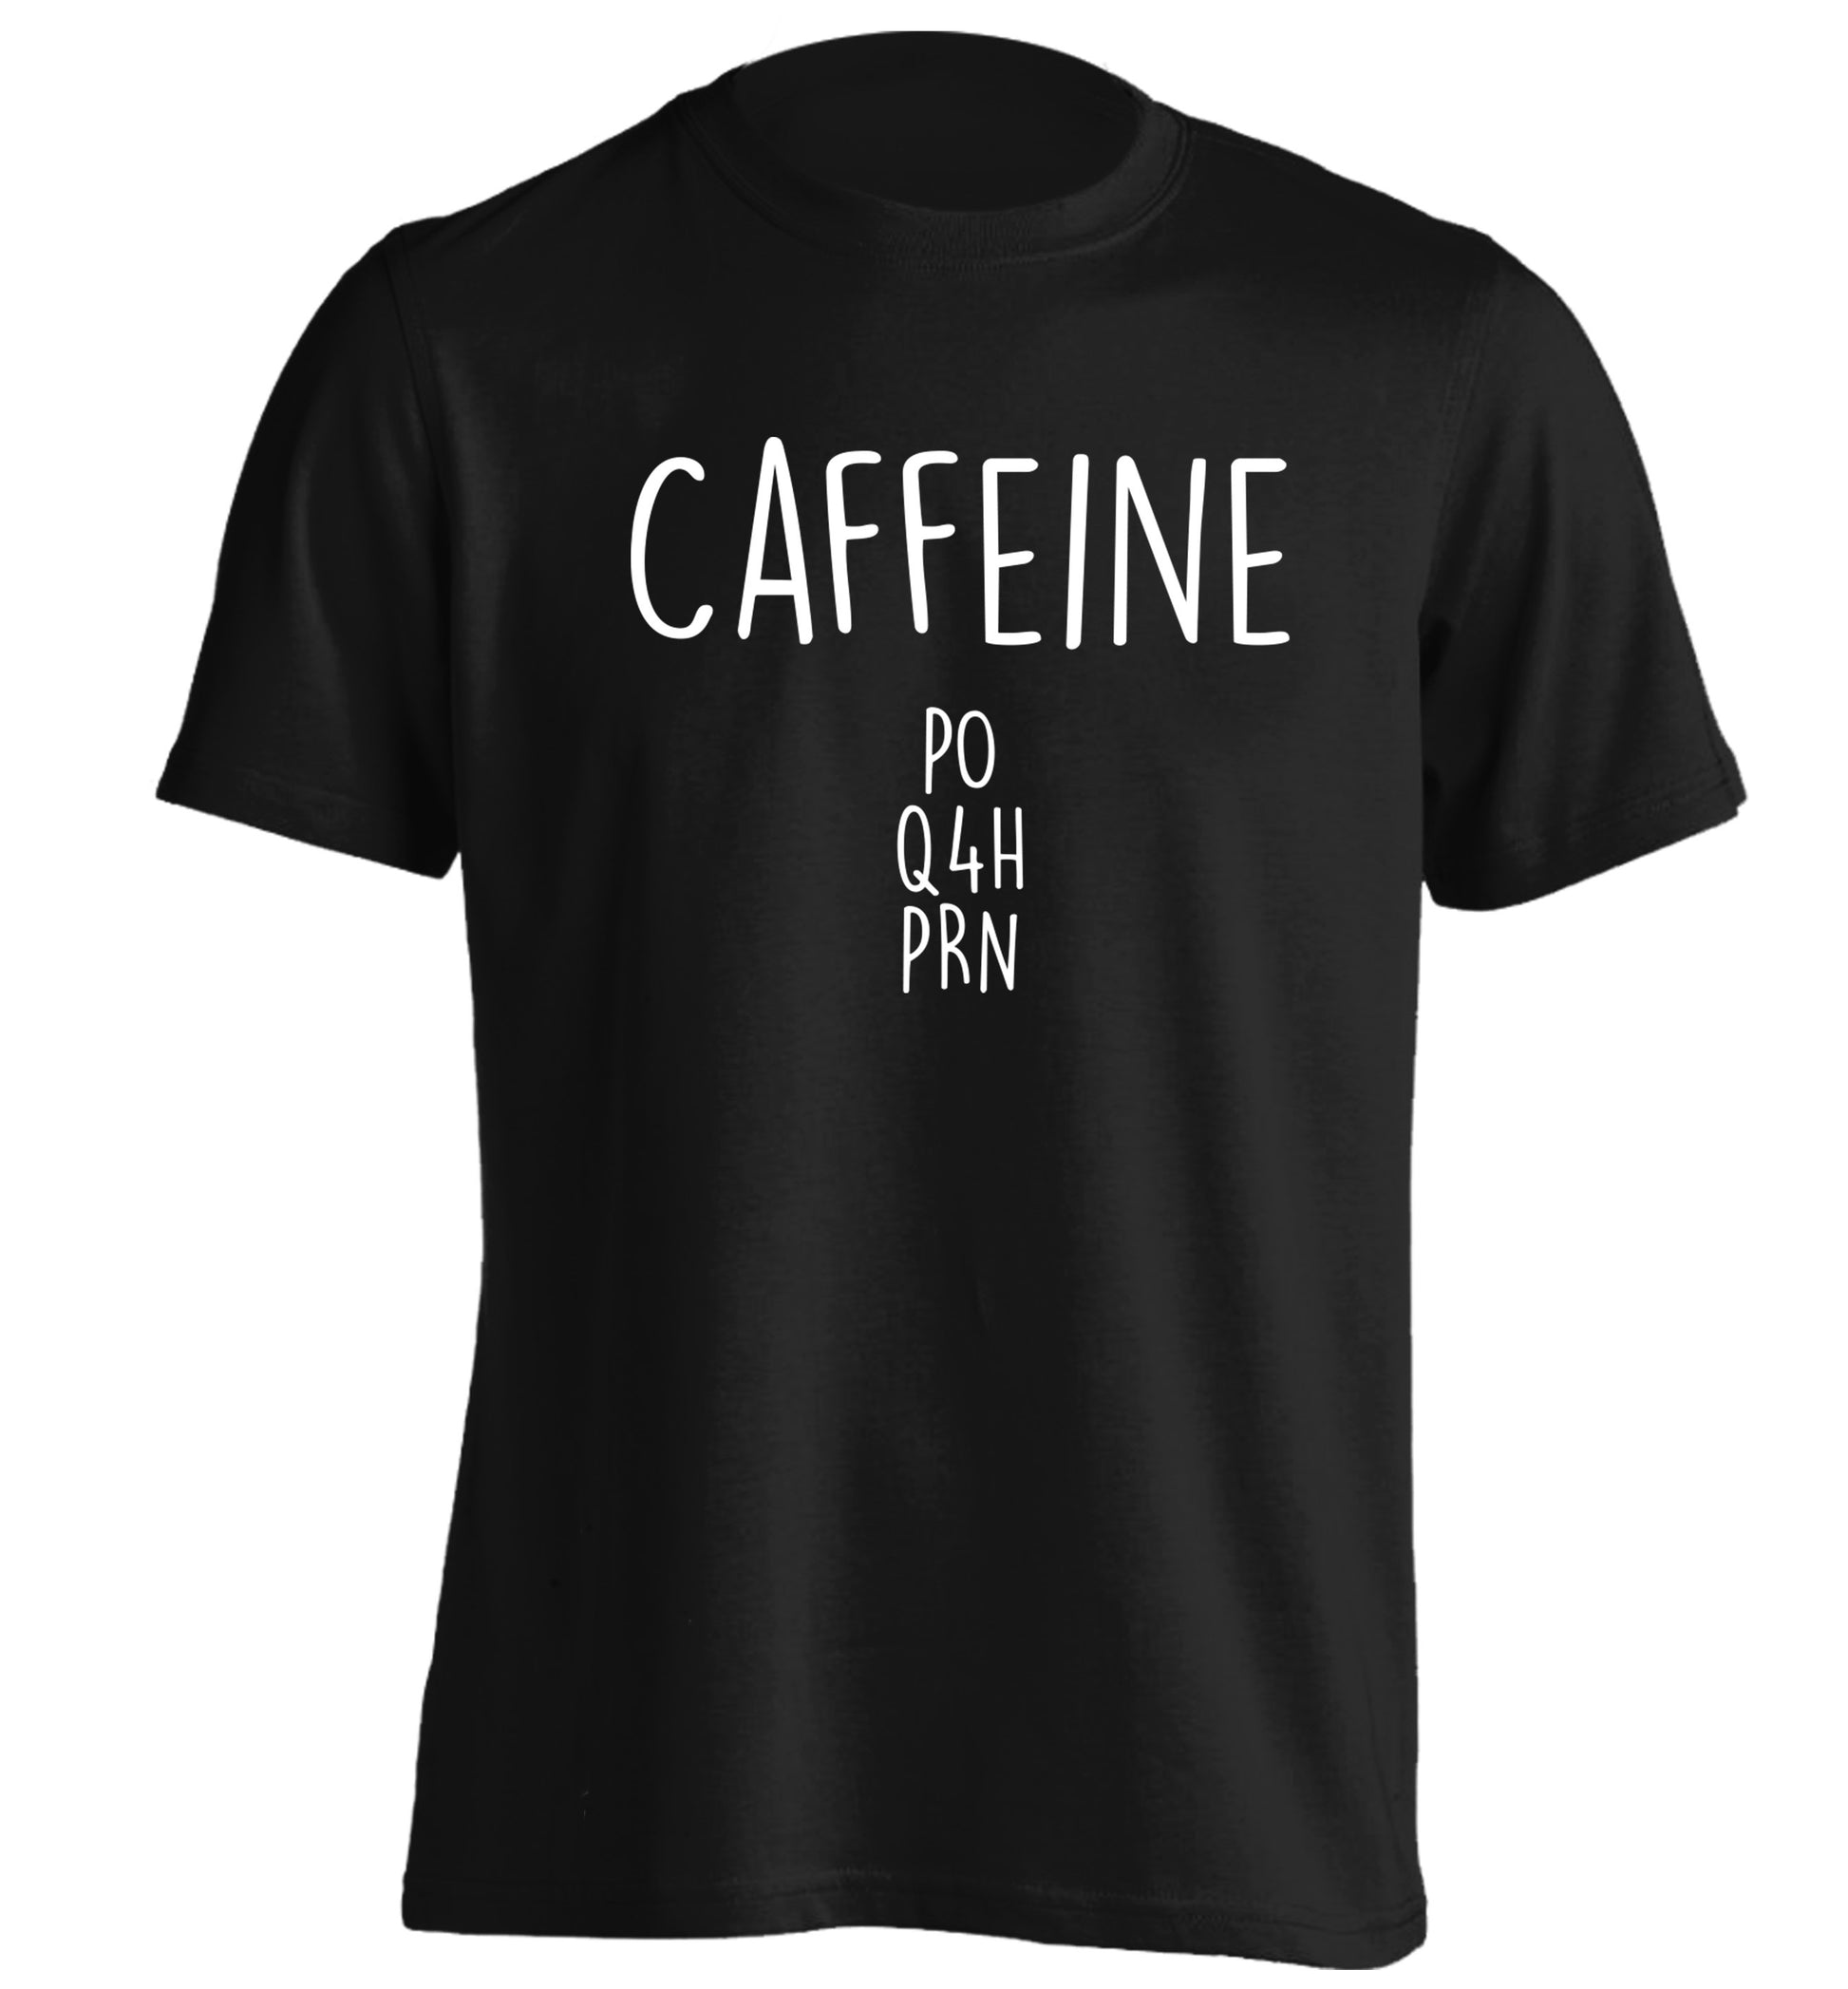 Caffeine PO Q4H PRN adults unisex black Tshirt 2XL